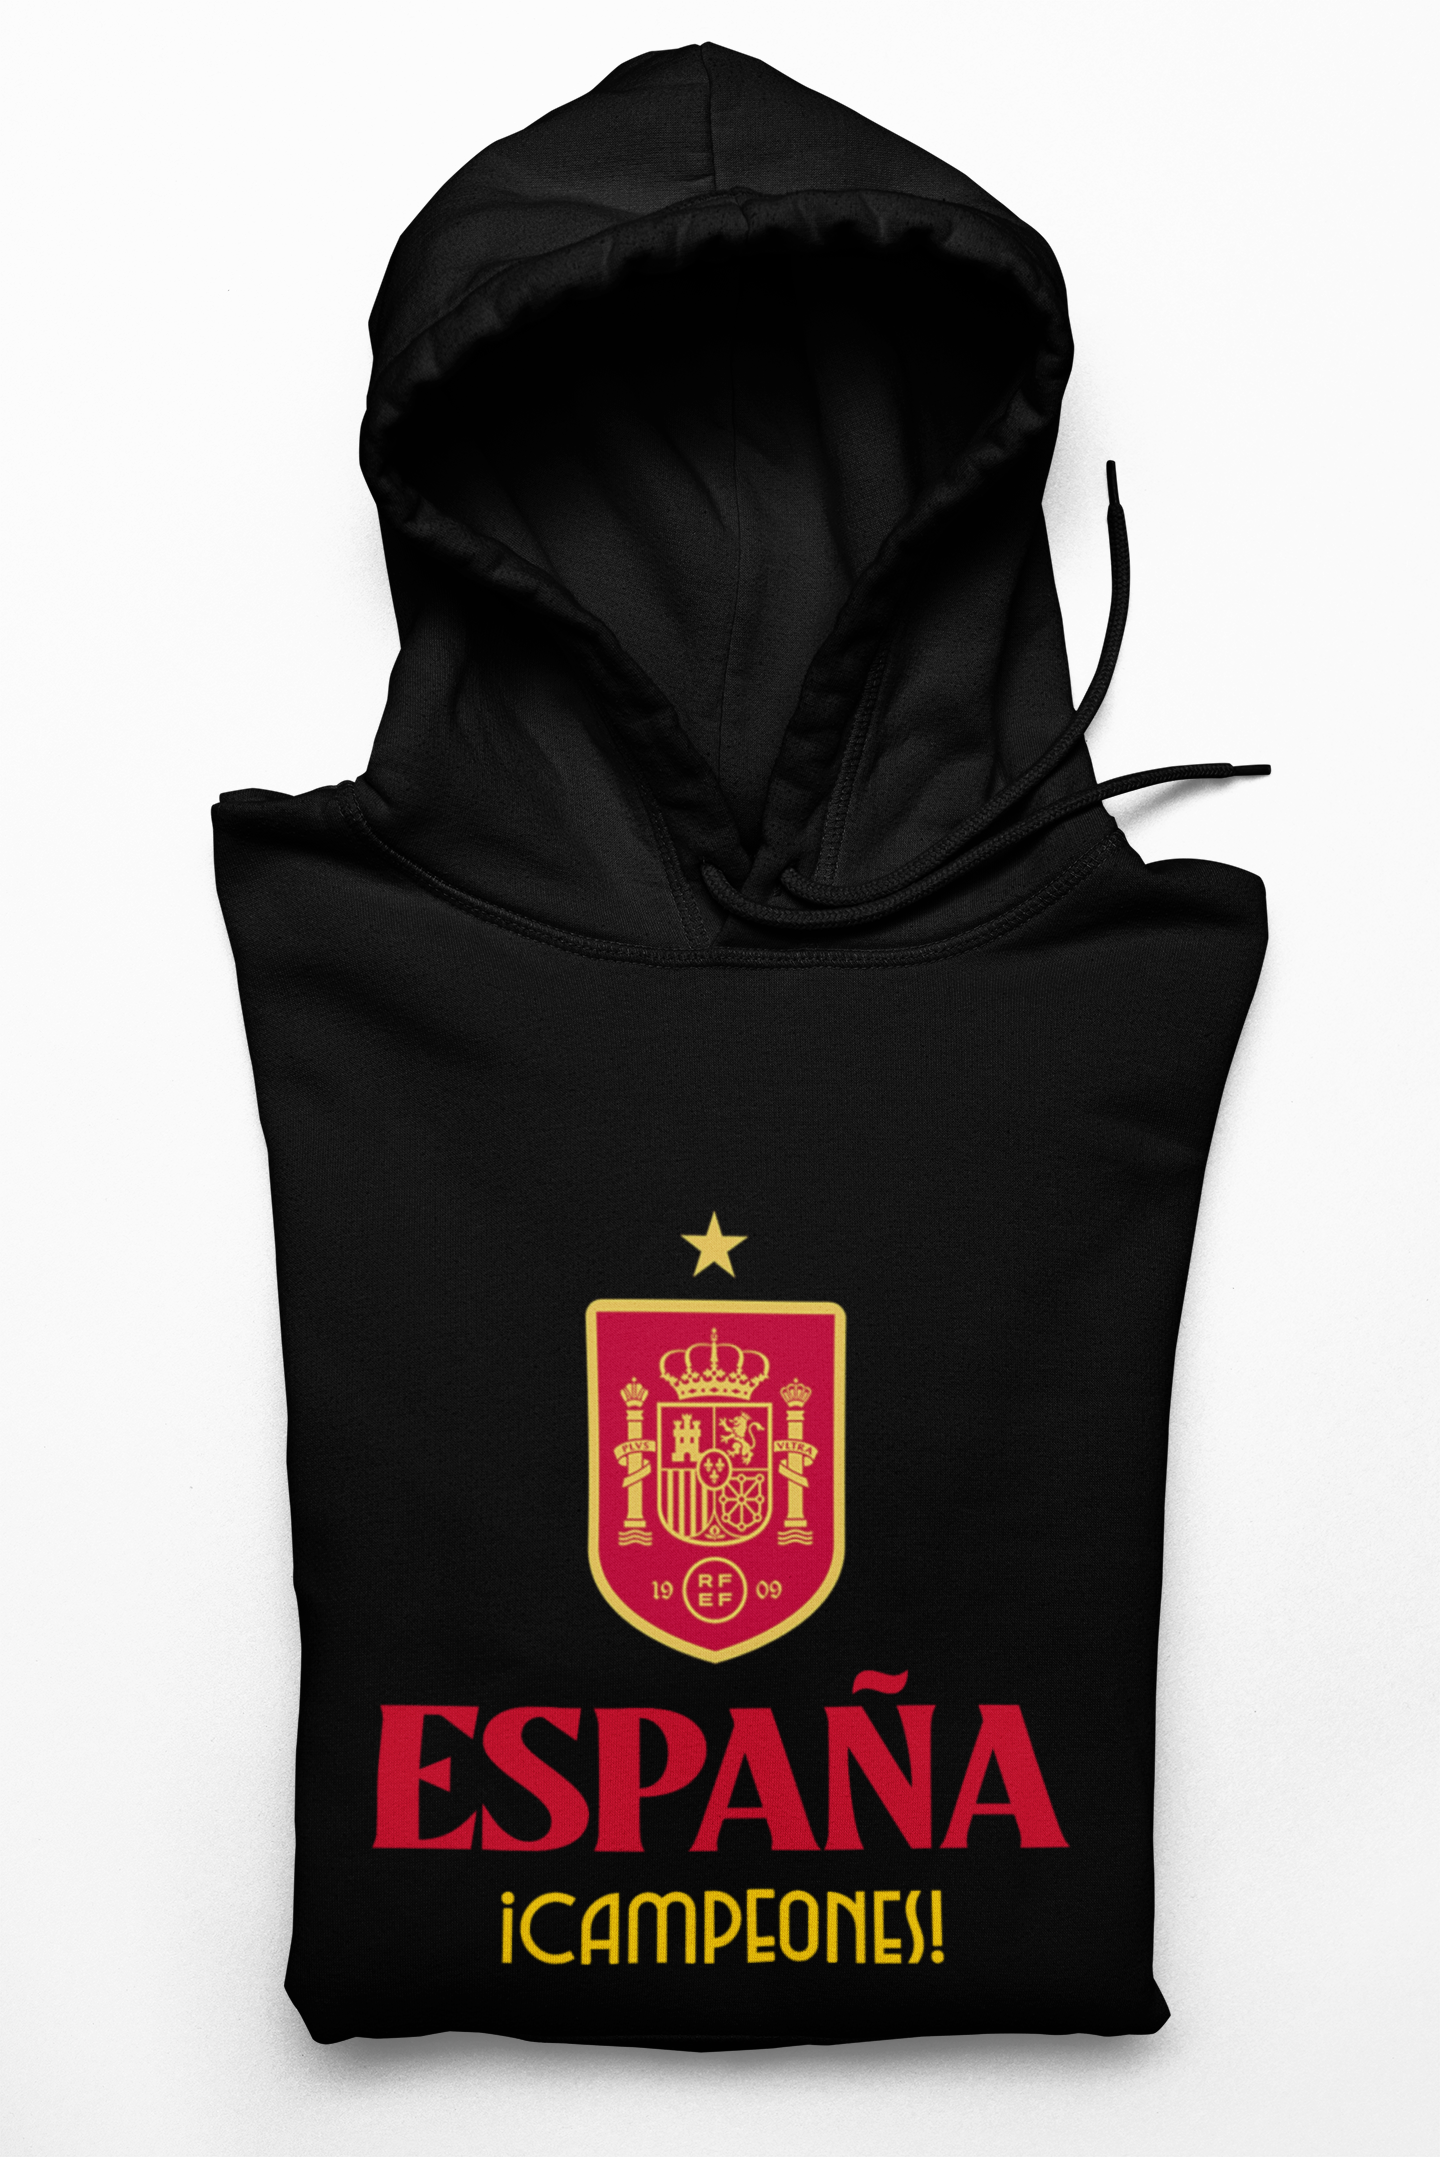 Spain Espana - Men's Hoodie